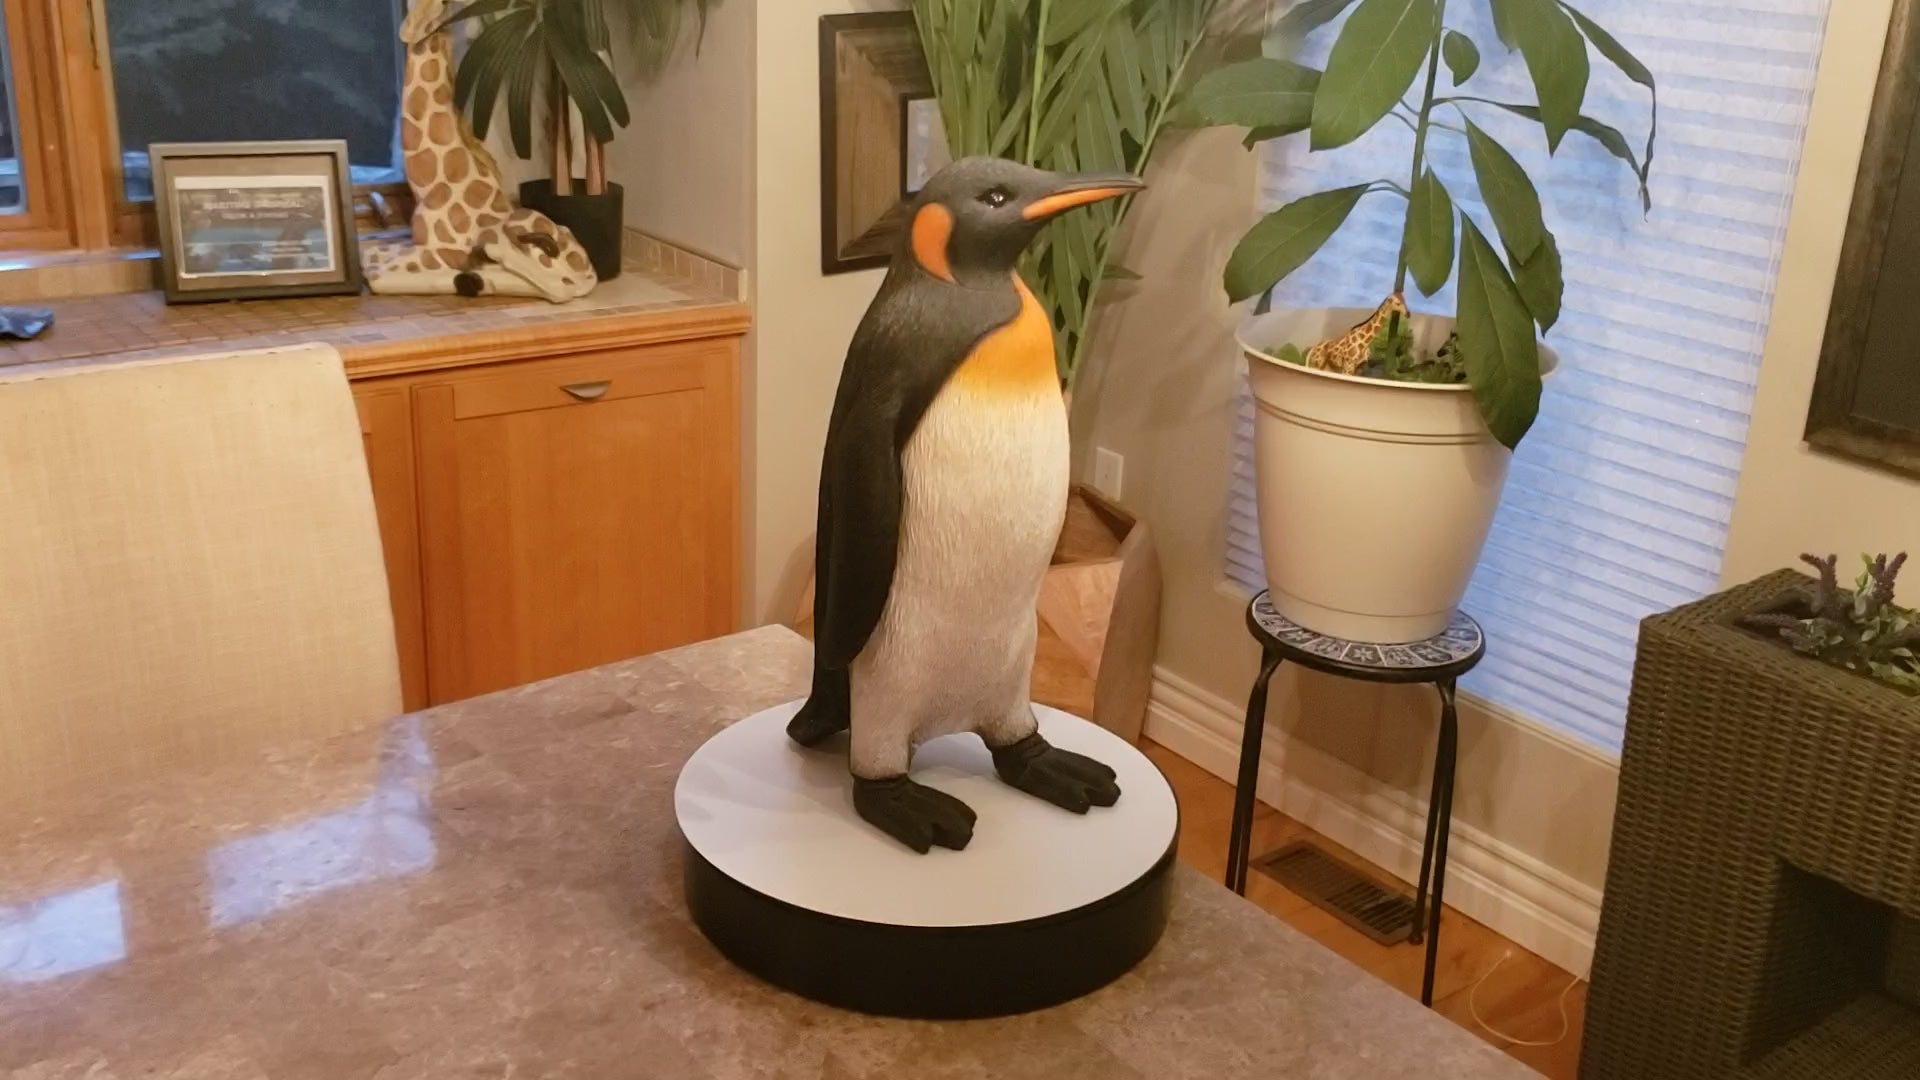 Auction for sale penguin statue